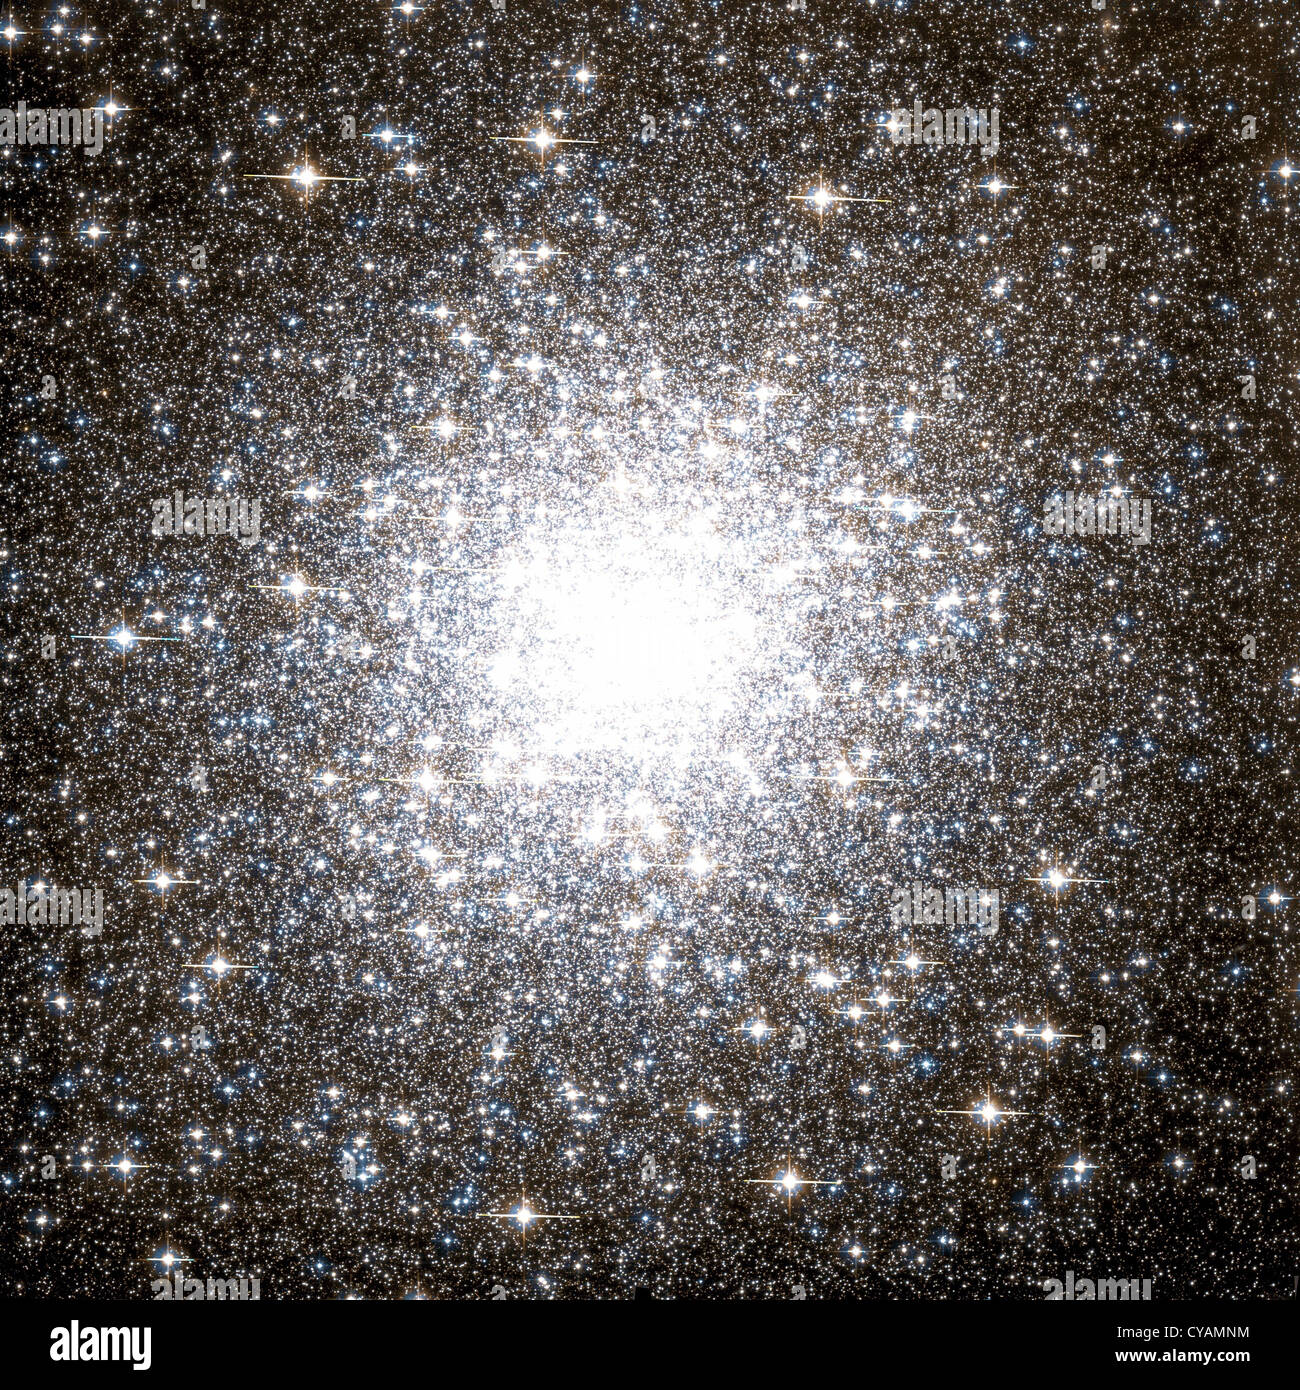 Messier 2 globular cluster Stock Photo